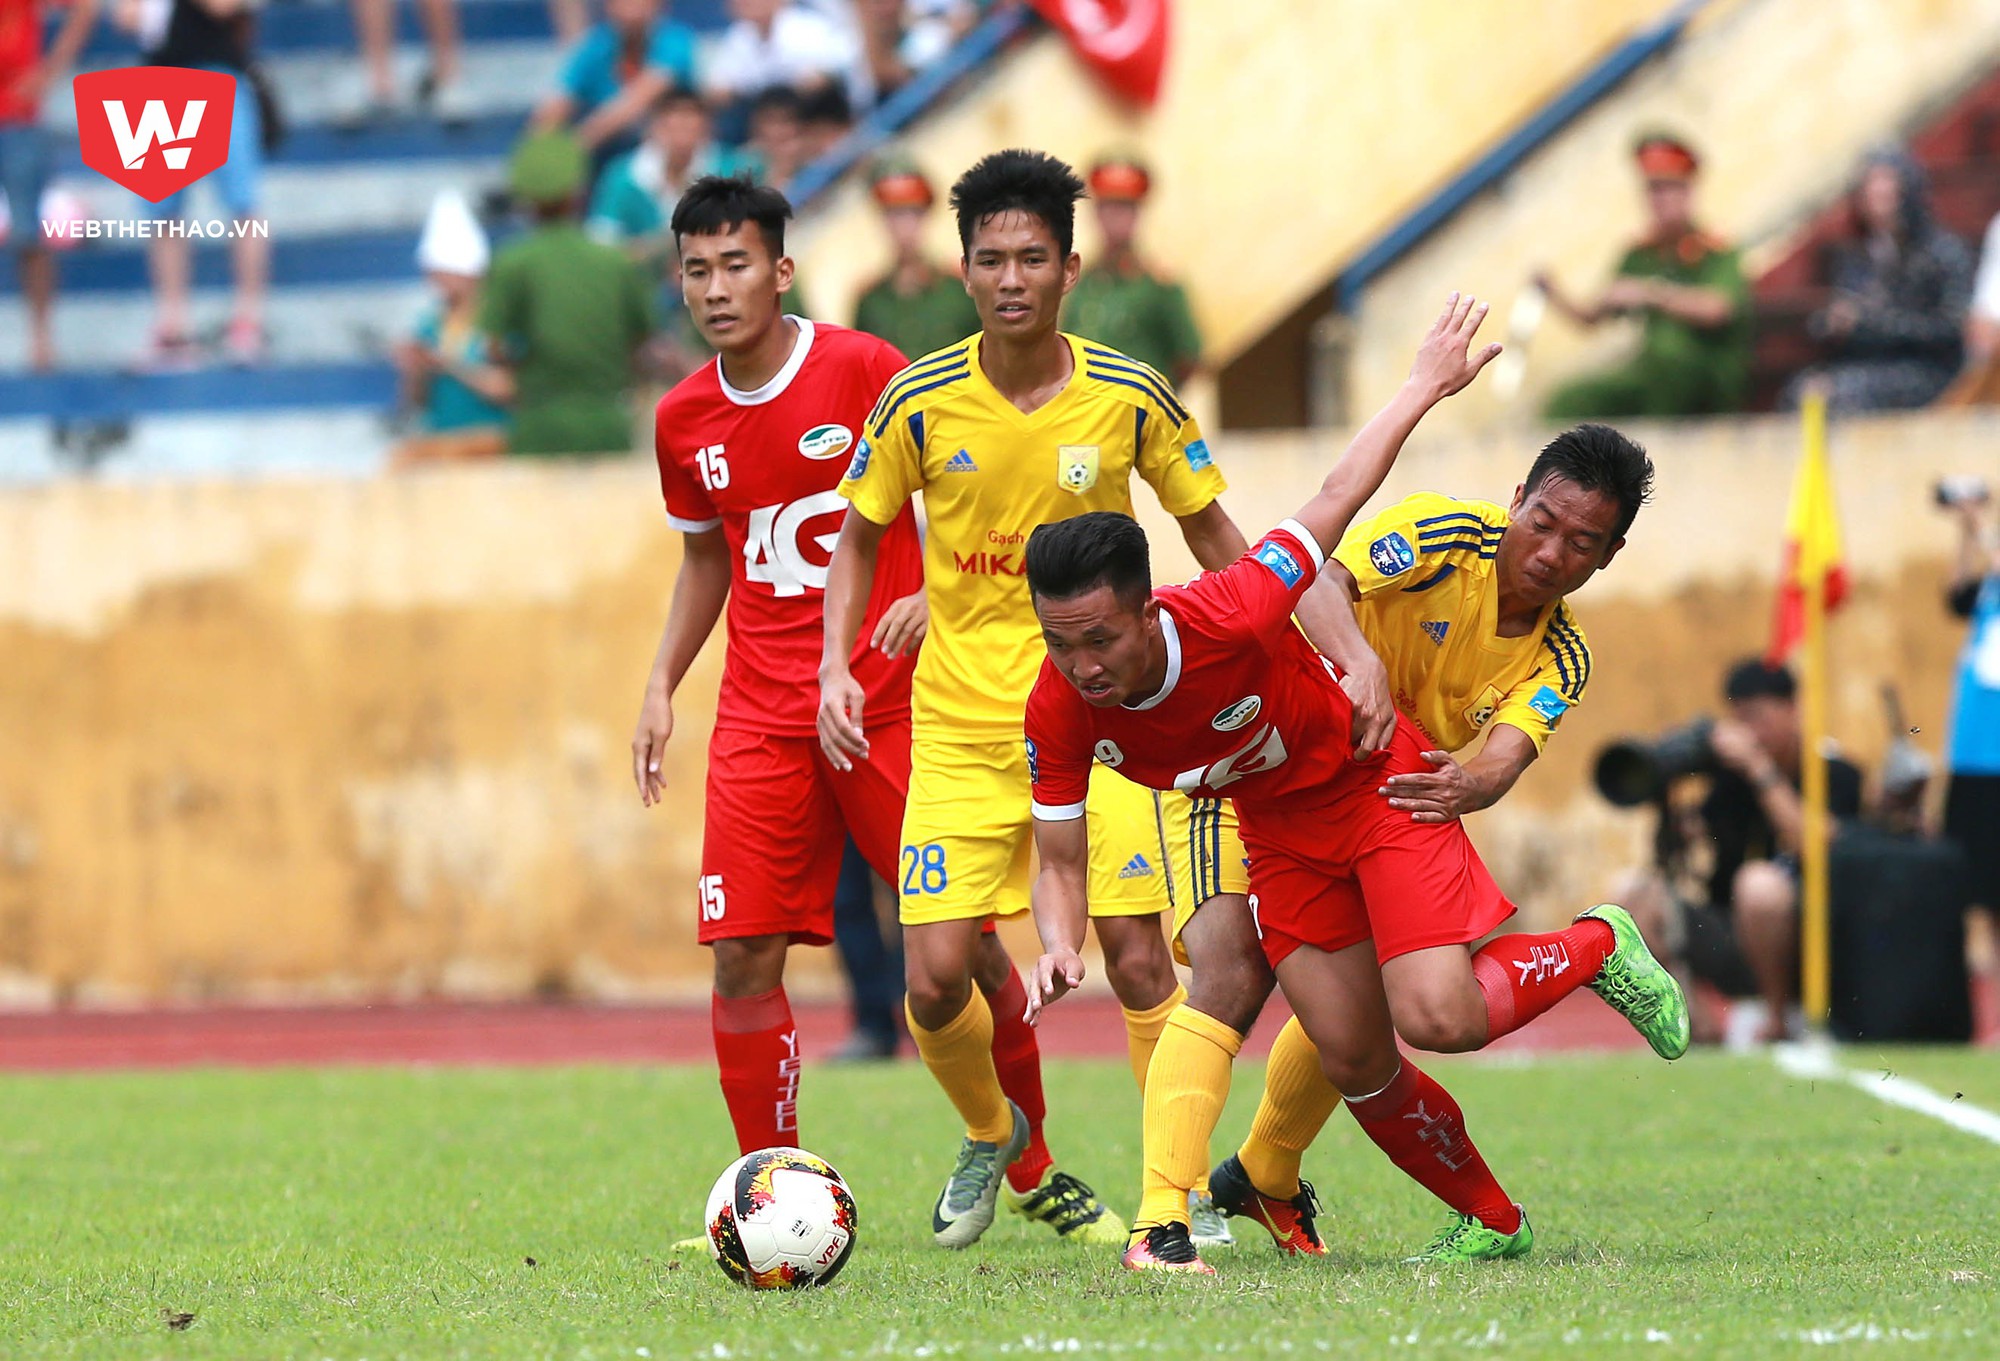 Tân binh Nam Định sẽ gặp vô vàn thách thức ở V.League 2018.